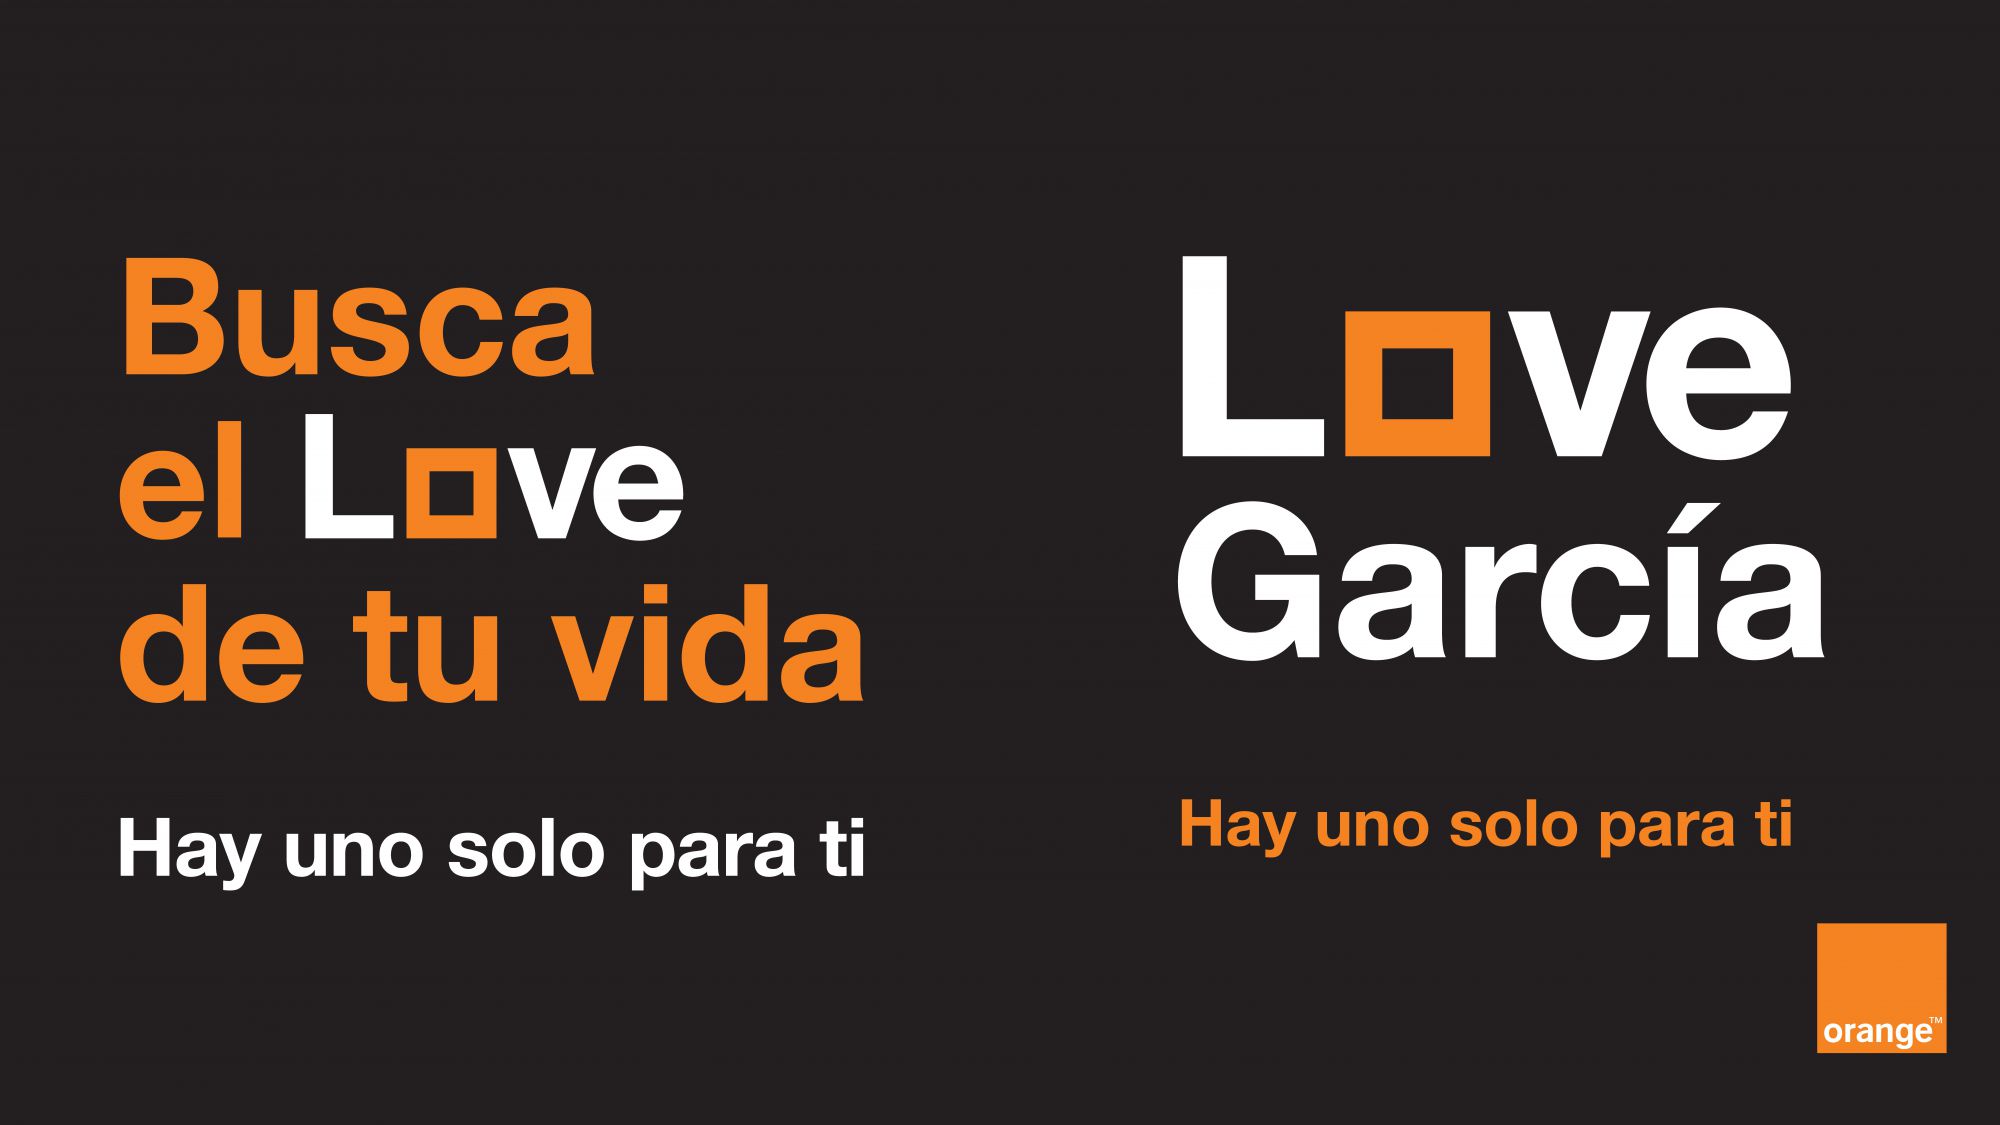 Orange lanza una oferta de sus tarifas convergentes Love personalizable